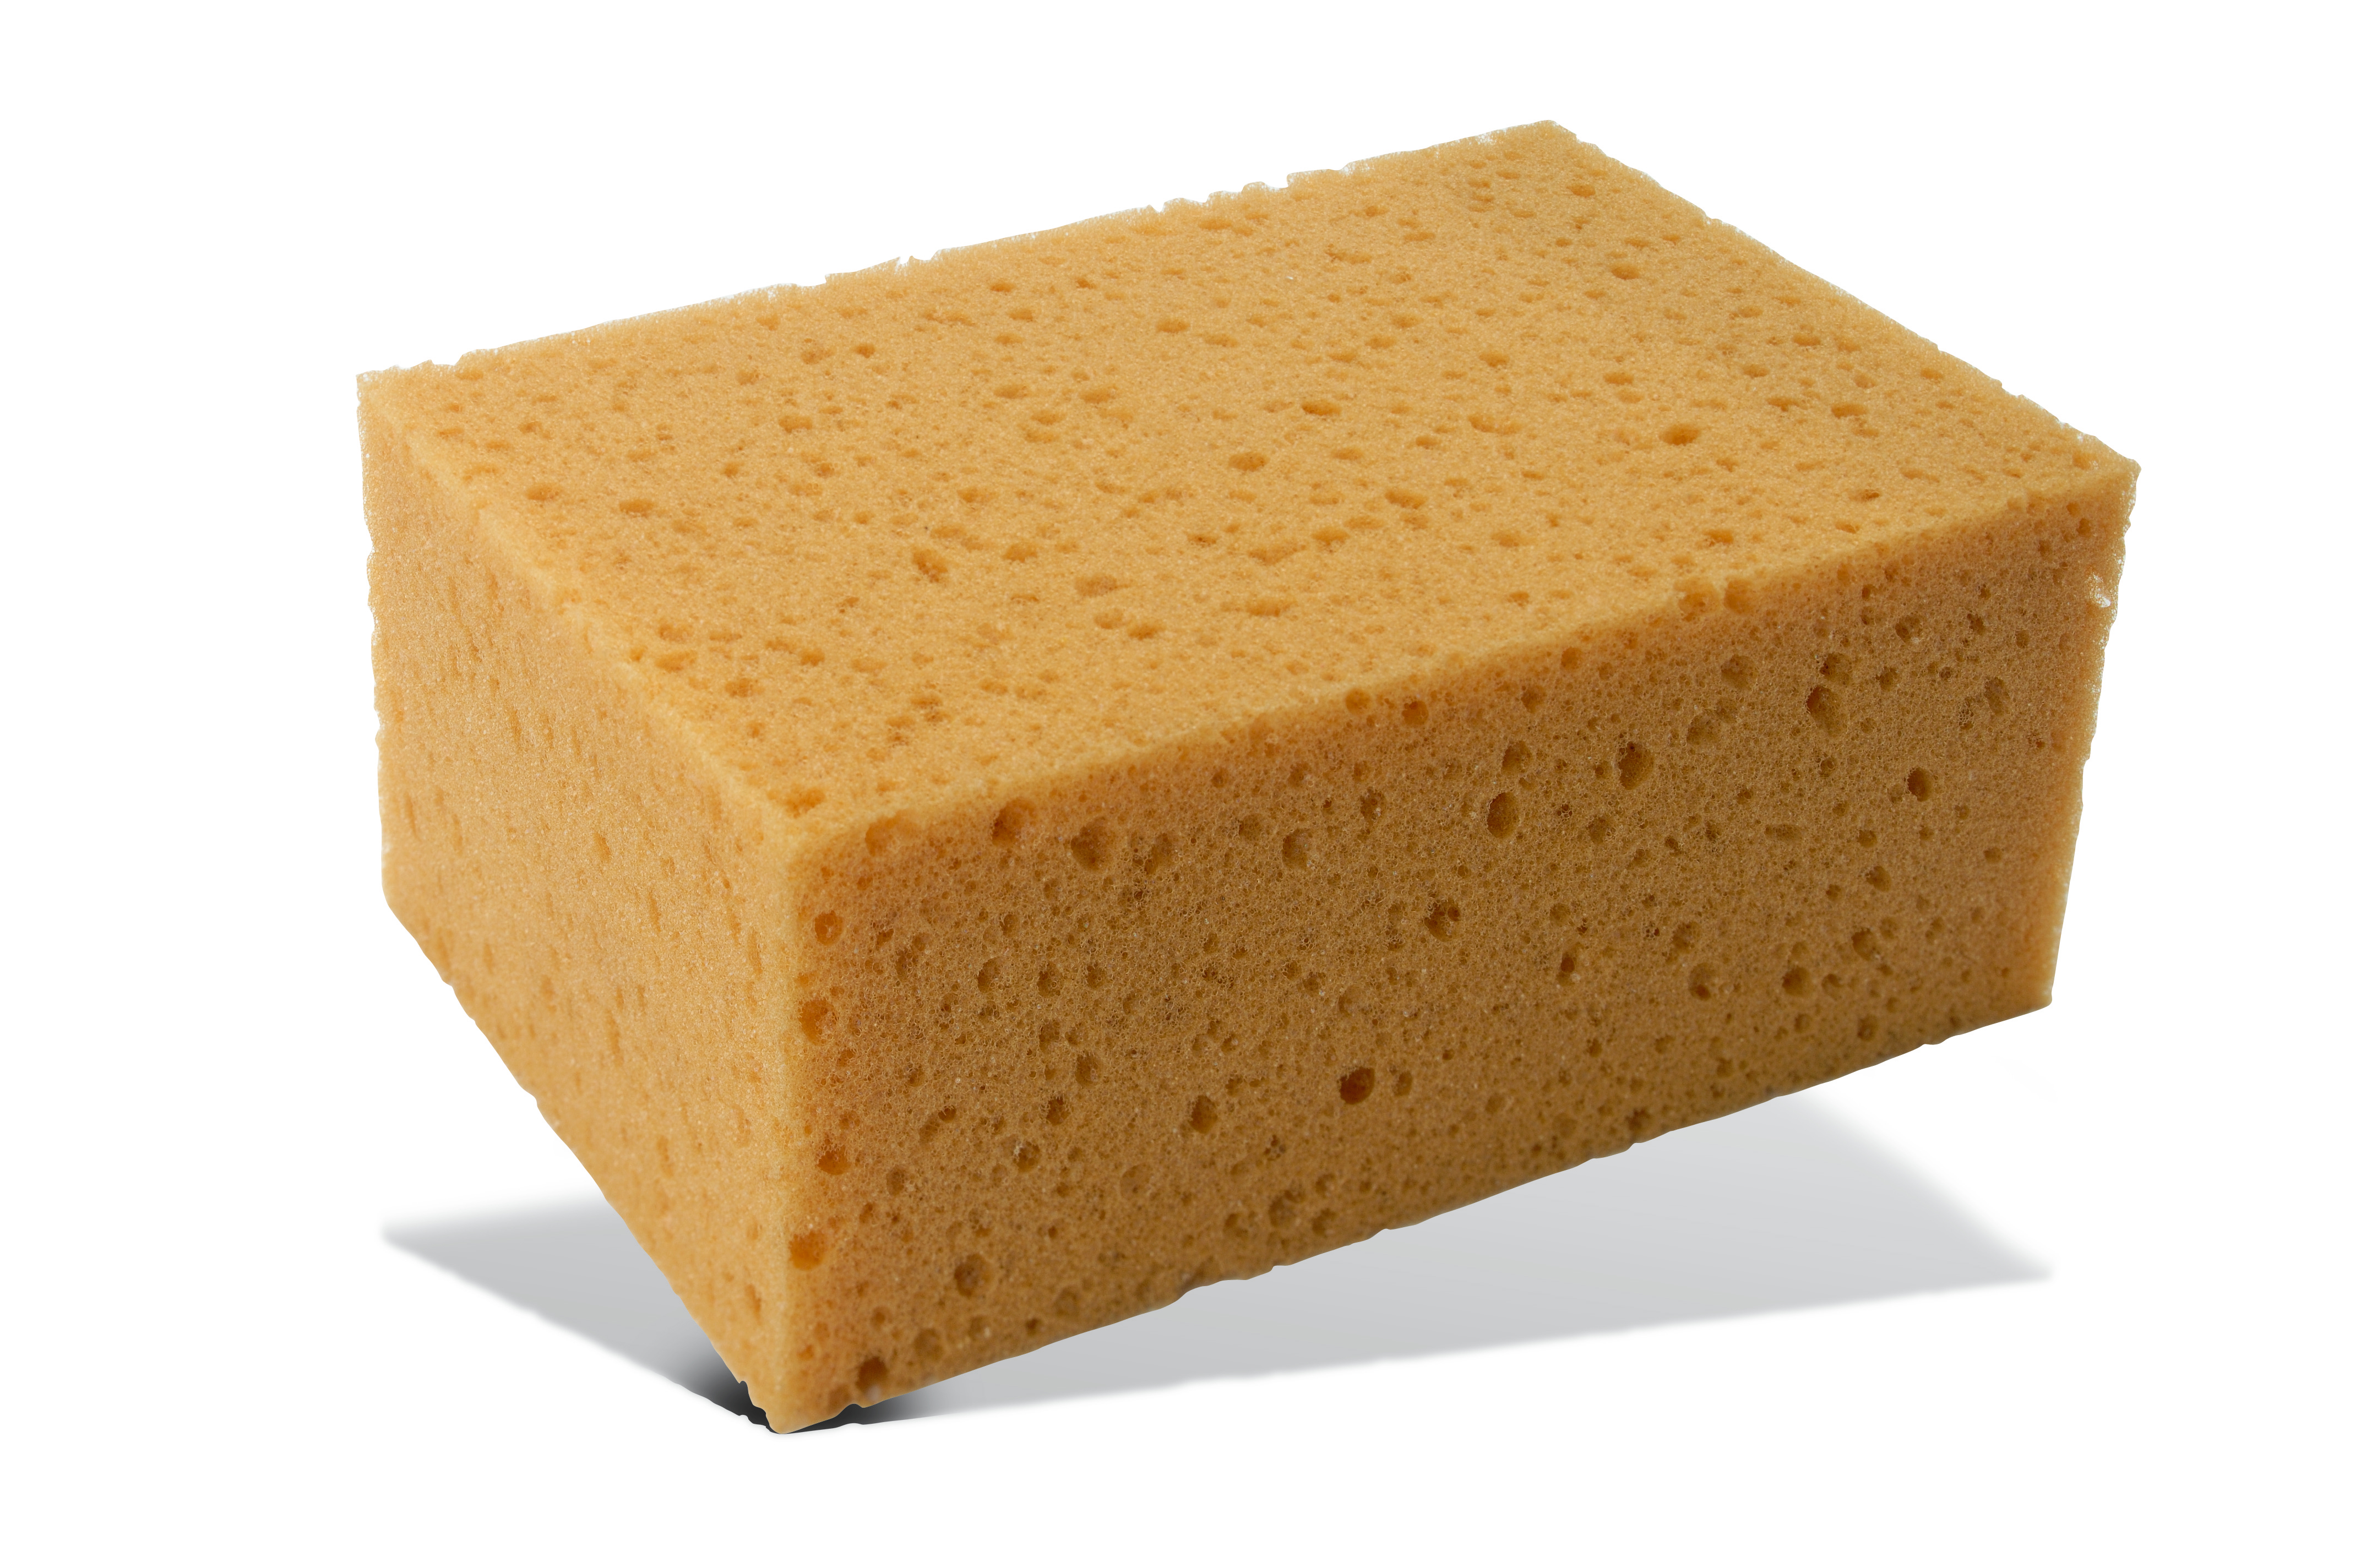 Tile grout sponges Pajarito